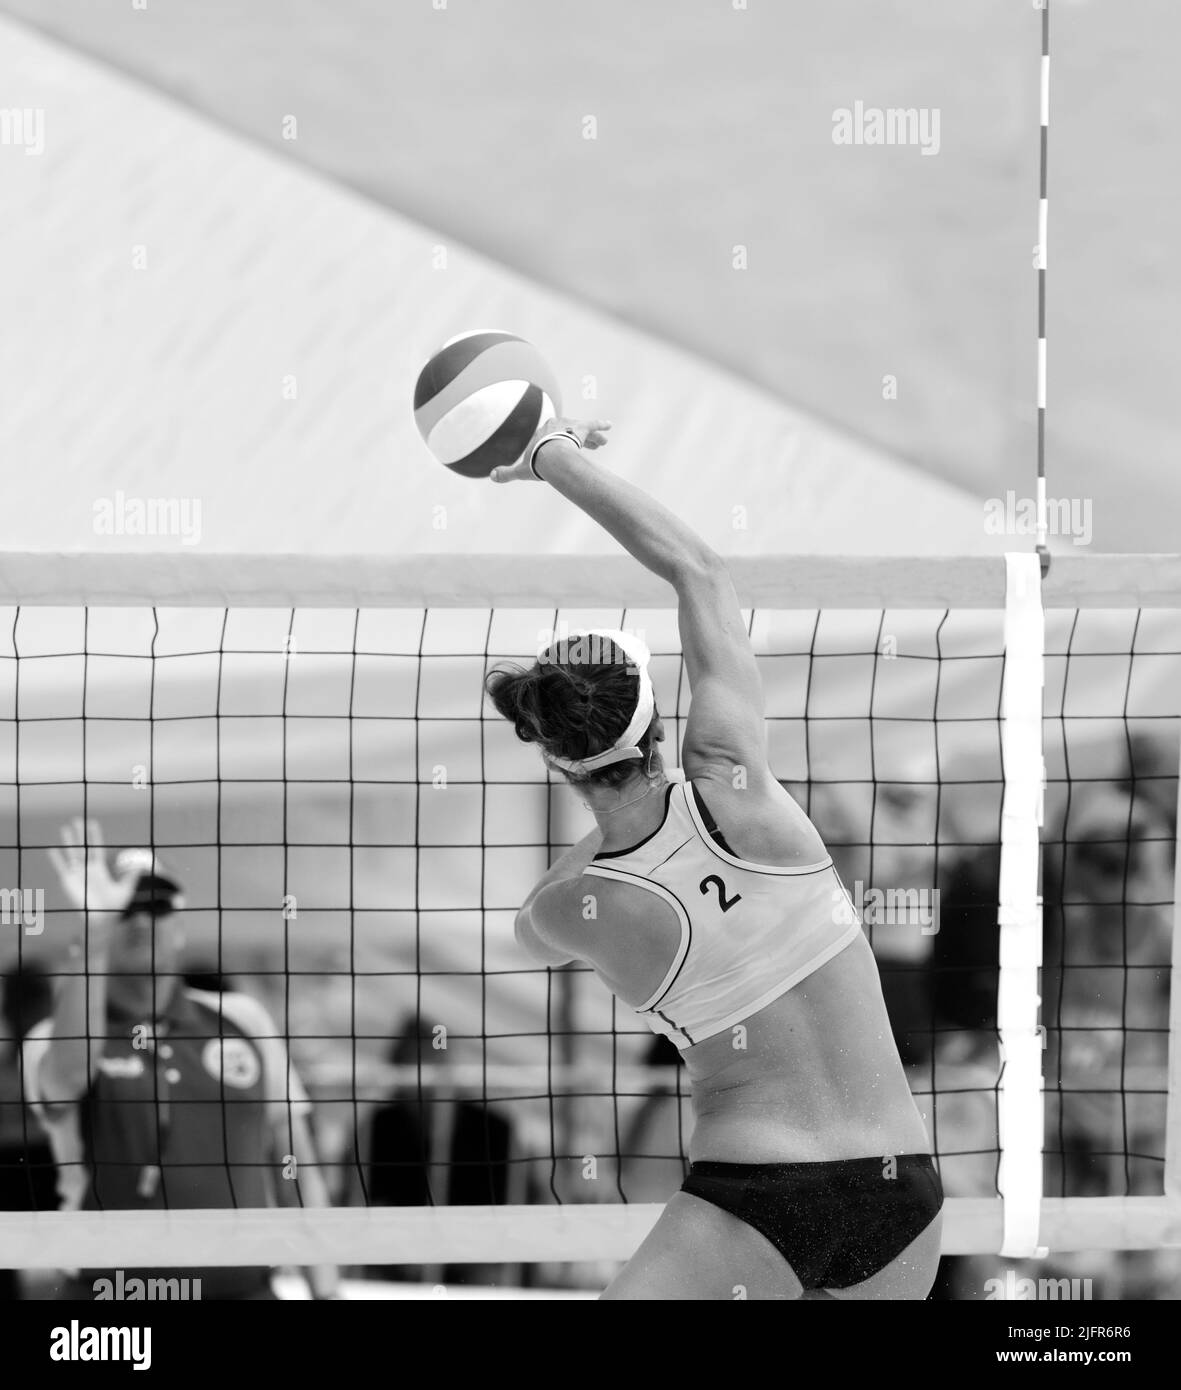 Un Jugador de Voleibol de Playa se está elevando para Spike the Ball en Formato de Imagen Vertical en Blanco y Negro Foto de stock